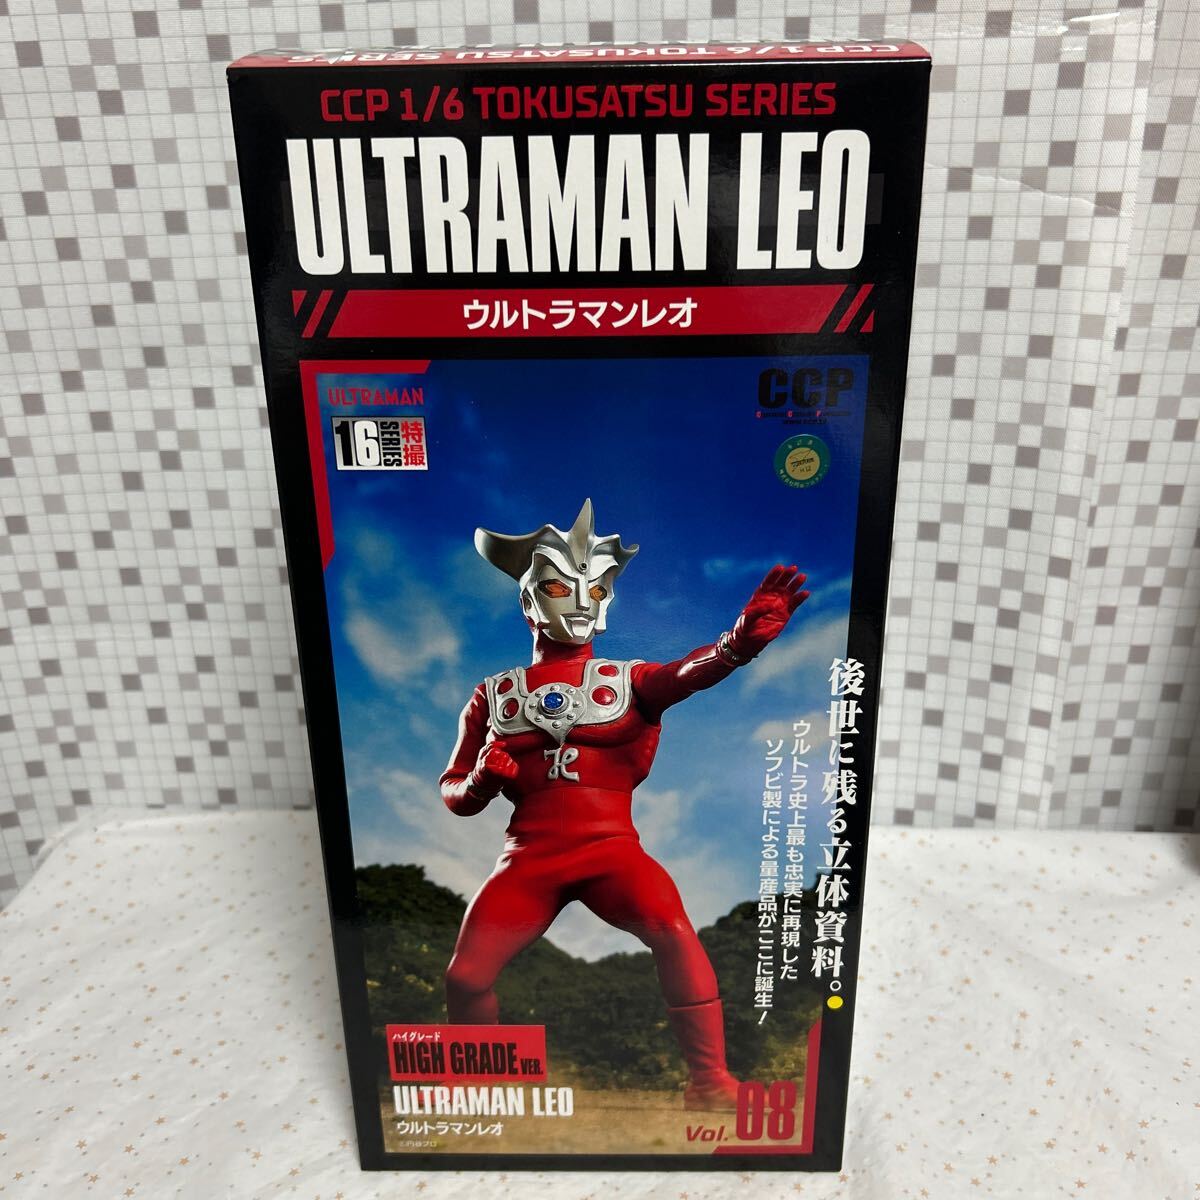 ttnc CCP 1/6 спецэффекты серии Ultraman Leo высококлассный Ver